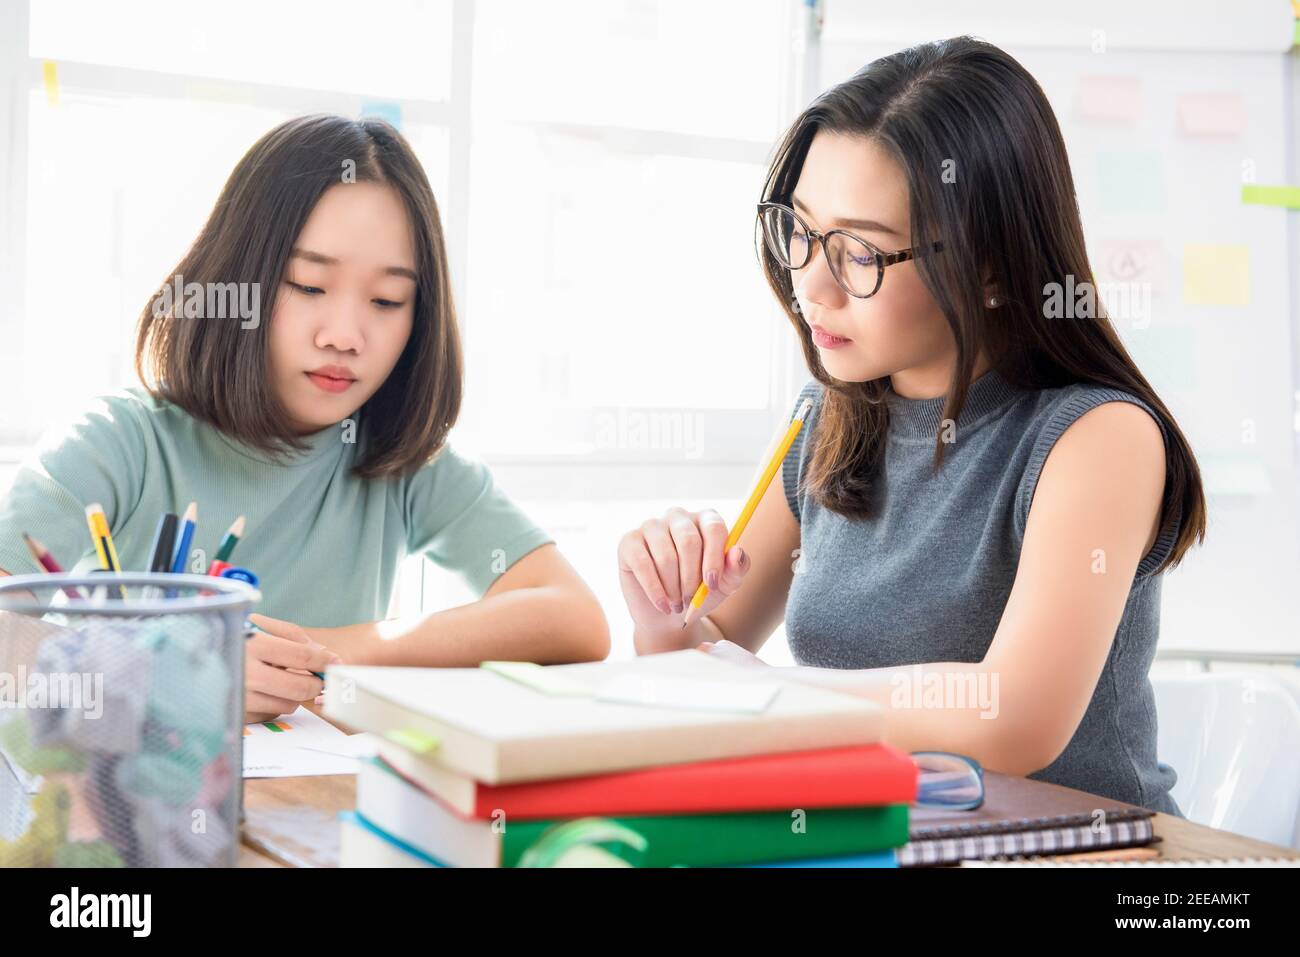 Groupe de femmes d'étudiants asiatiques chinois faisant une affectation à la table en classe Banque D'Images